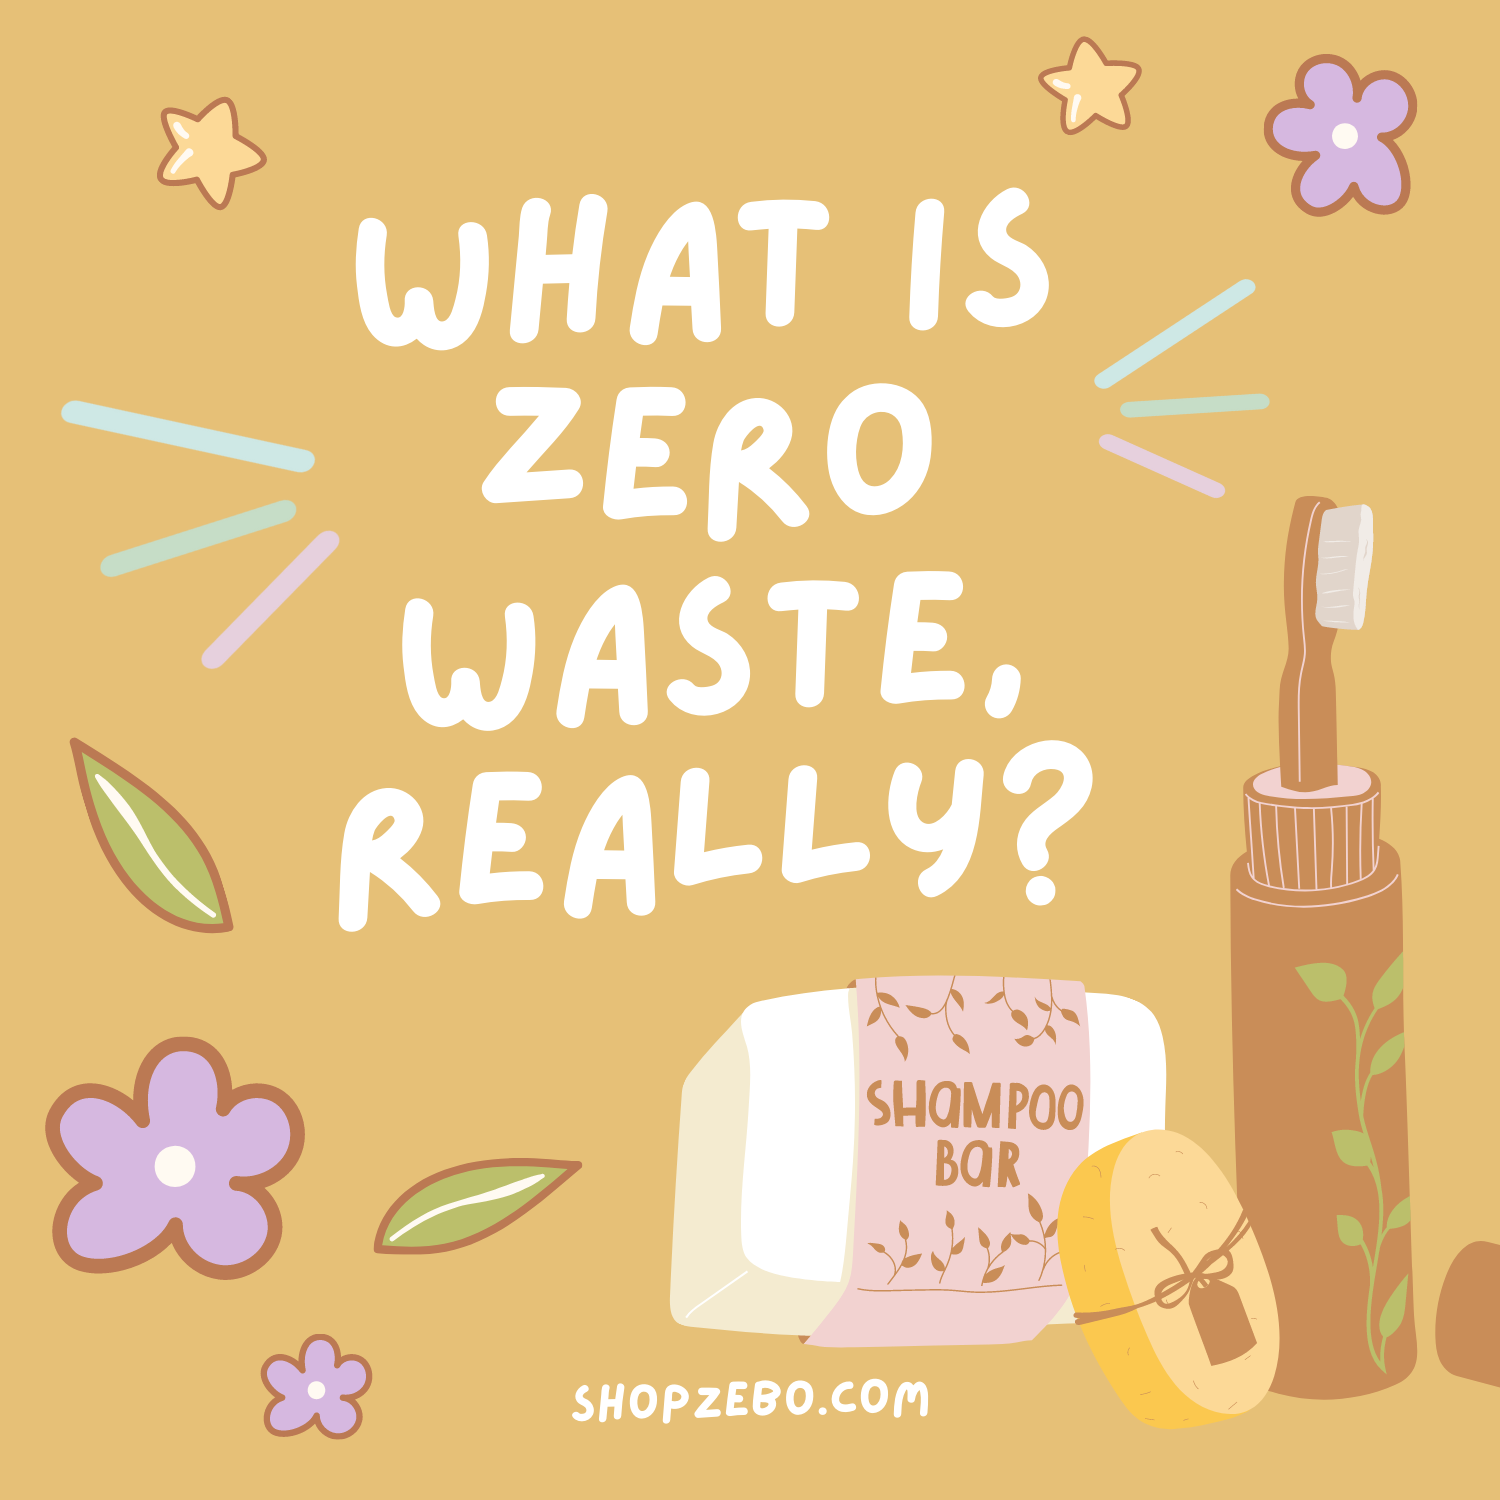 What is zero waste (ish)?